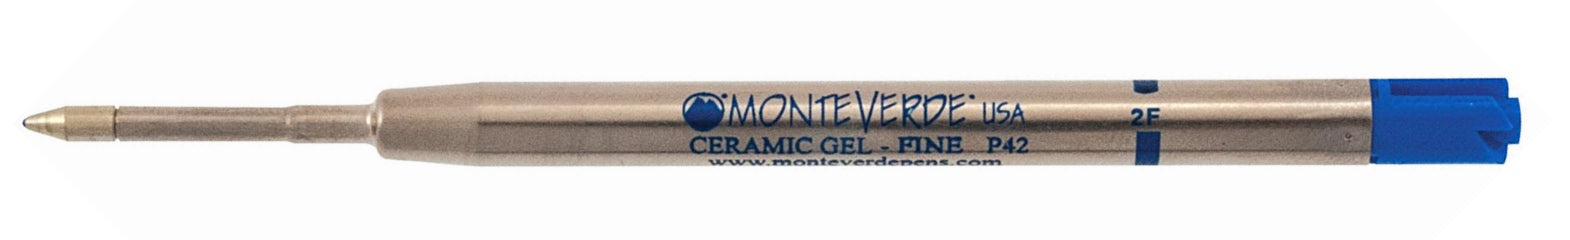 Monteverde Capless Ceramic Gel Refill - Blesket Canada